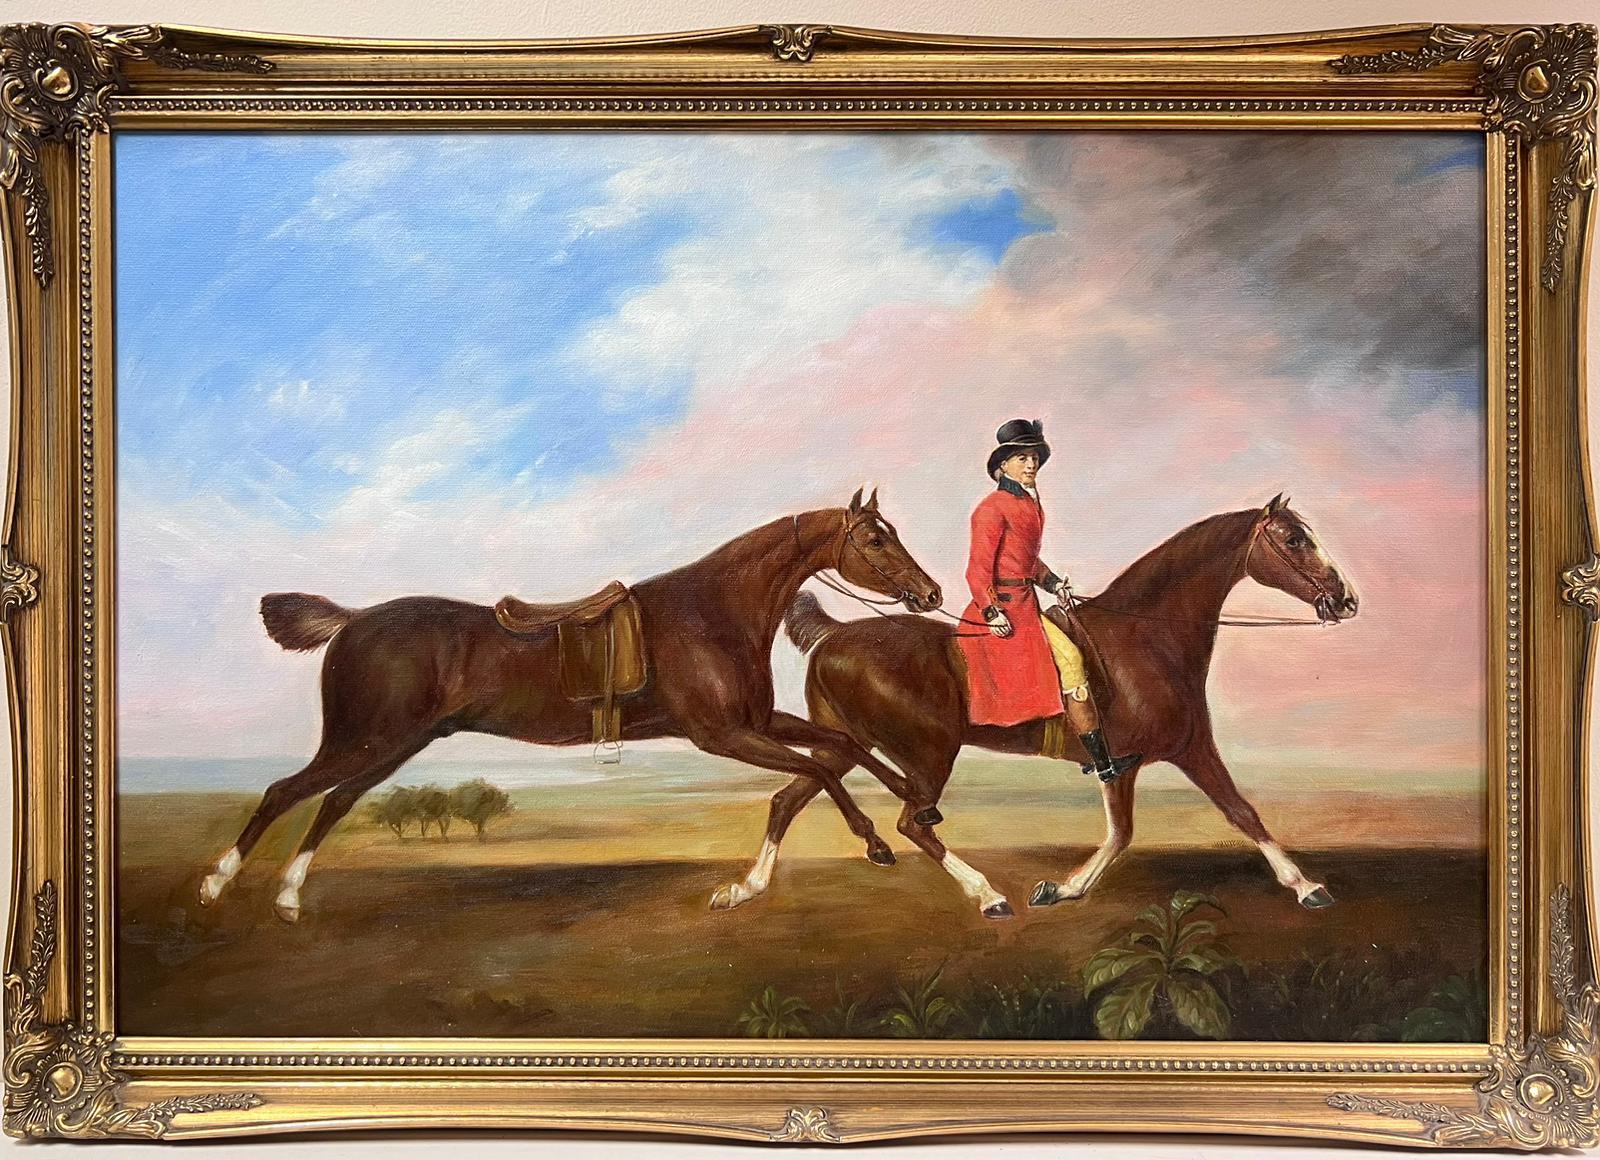 Großes Ölgemälde, Sportkunst, Ölgemälde Reiter auf Pferd mit einem anderen Pferd, gerahmt – Painting von European Artist